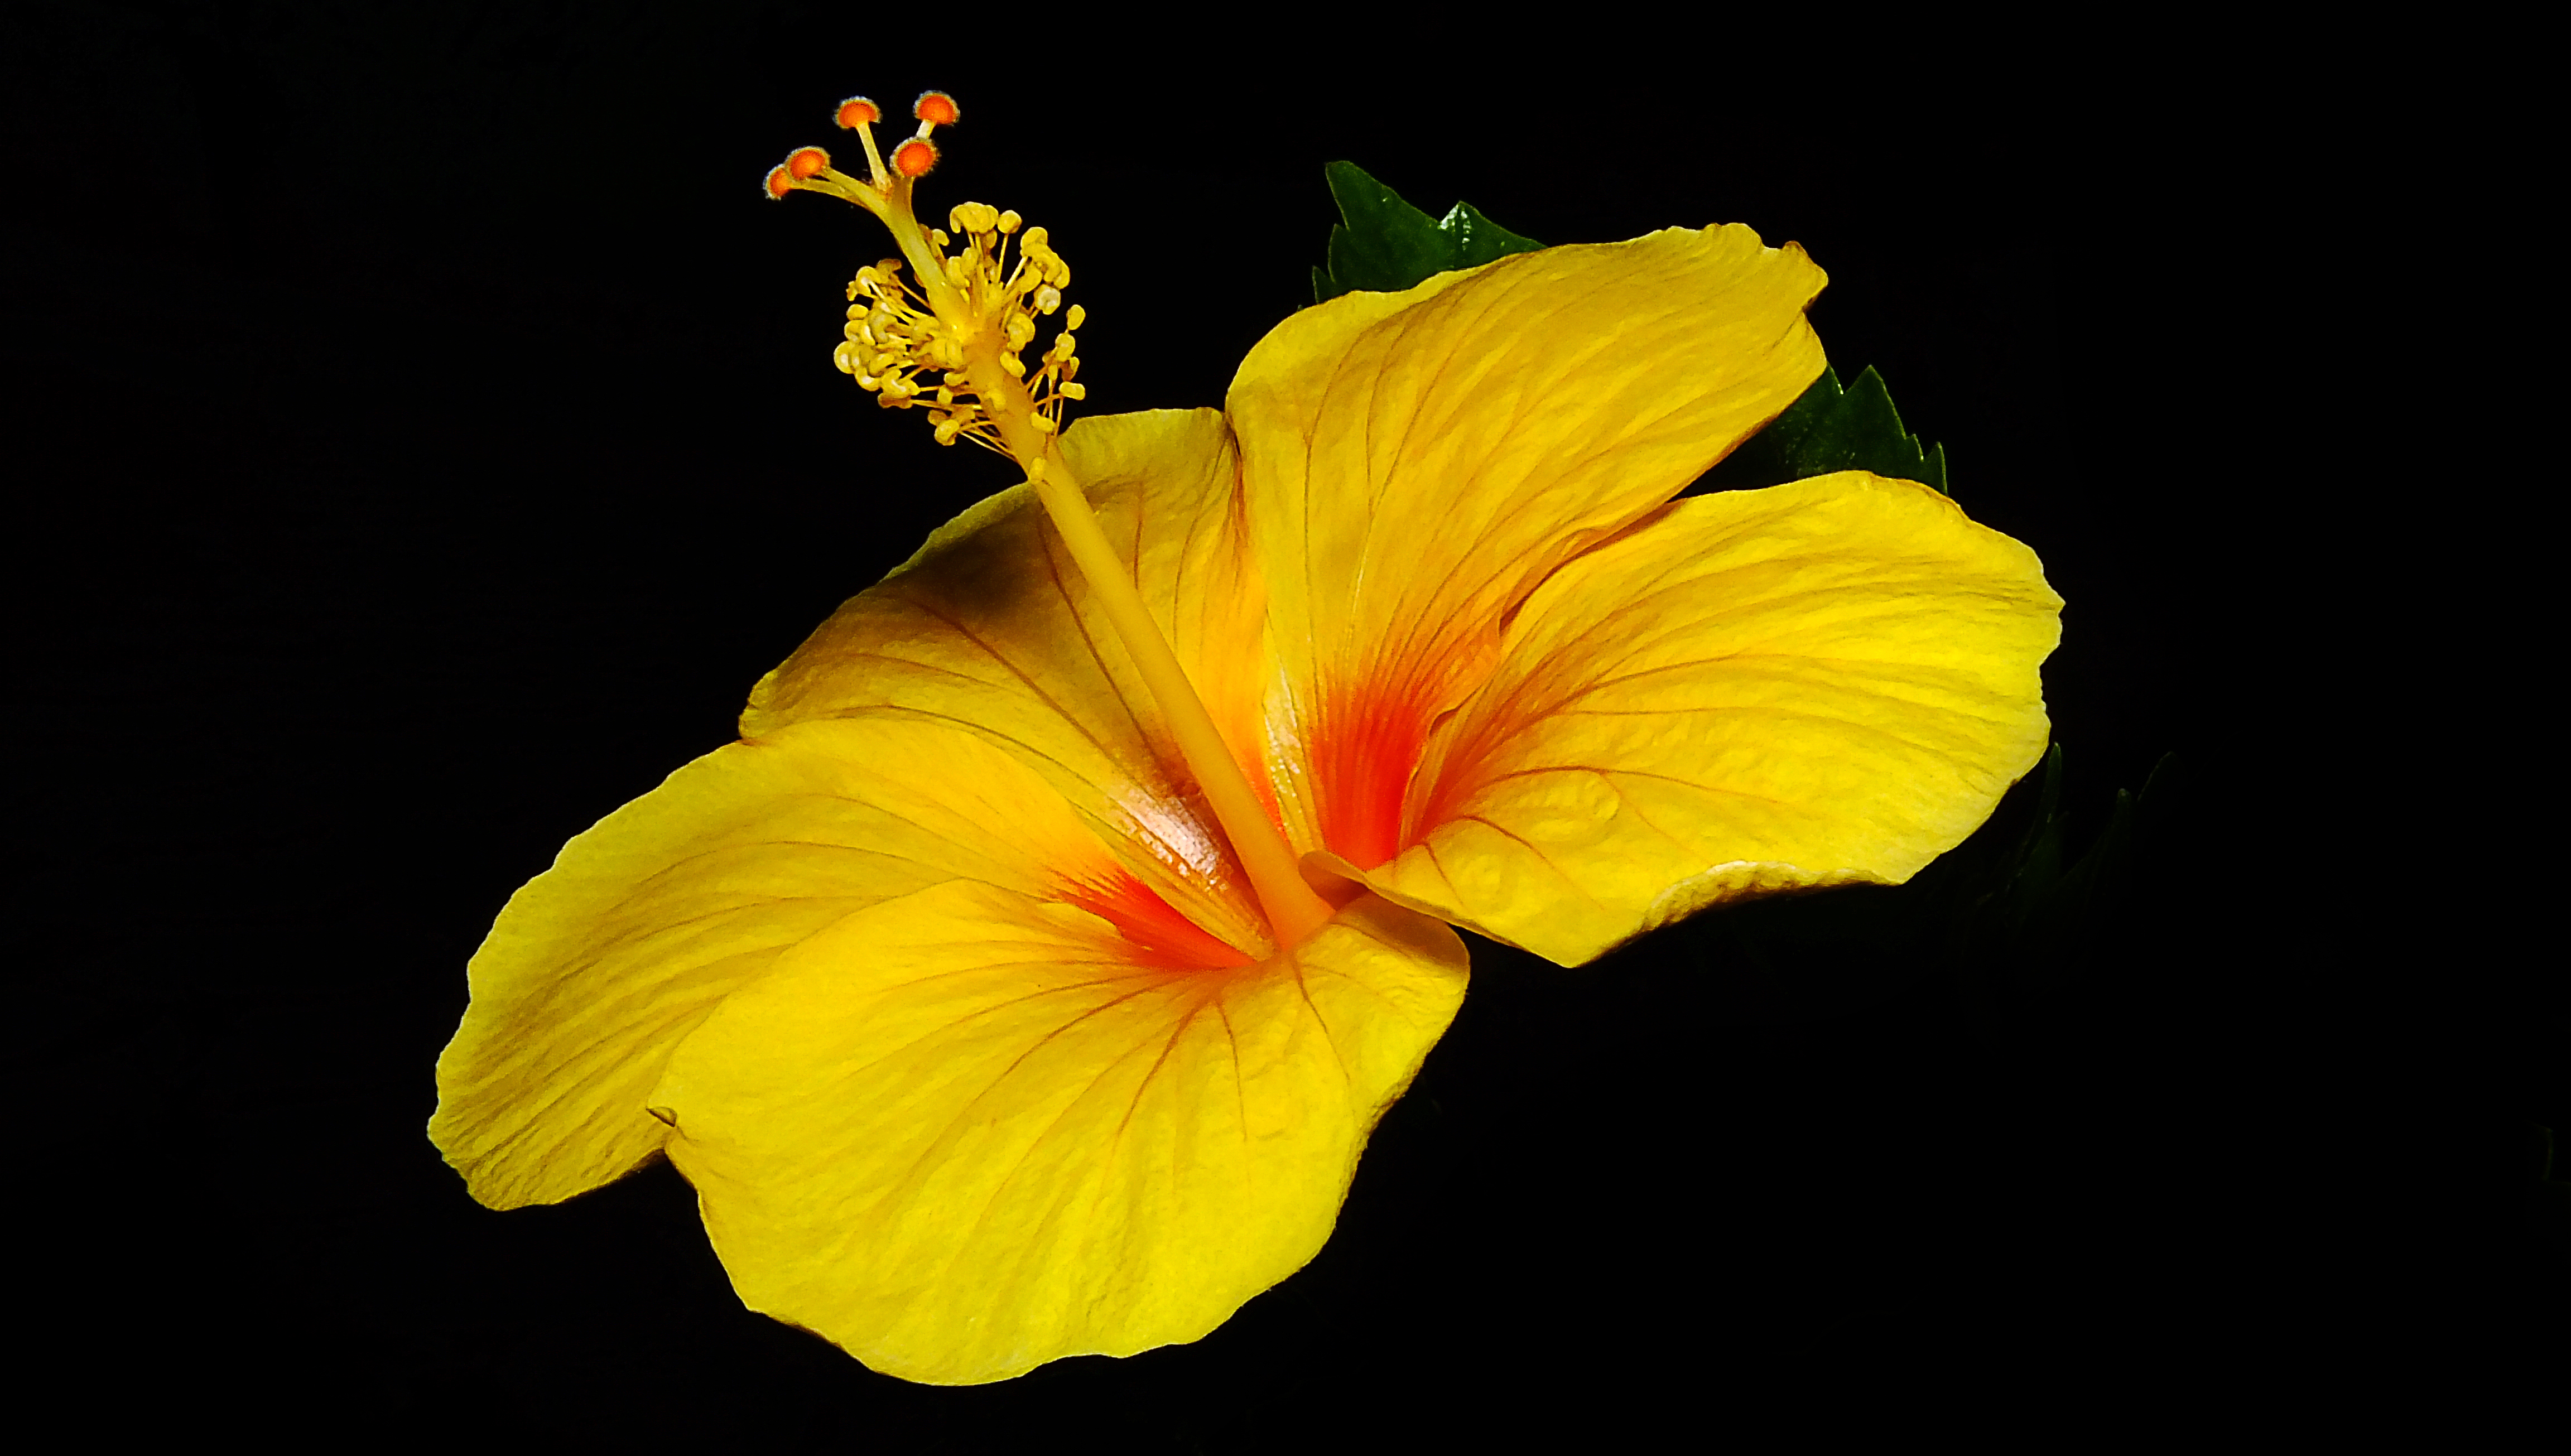 fond d'écran hd fond d'écran hd,plante à fleurs,fleur,pétale,jaune,hibiscus